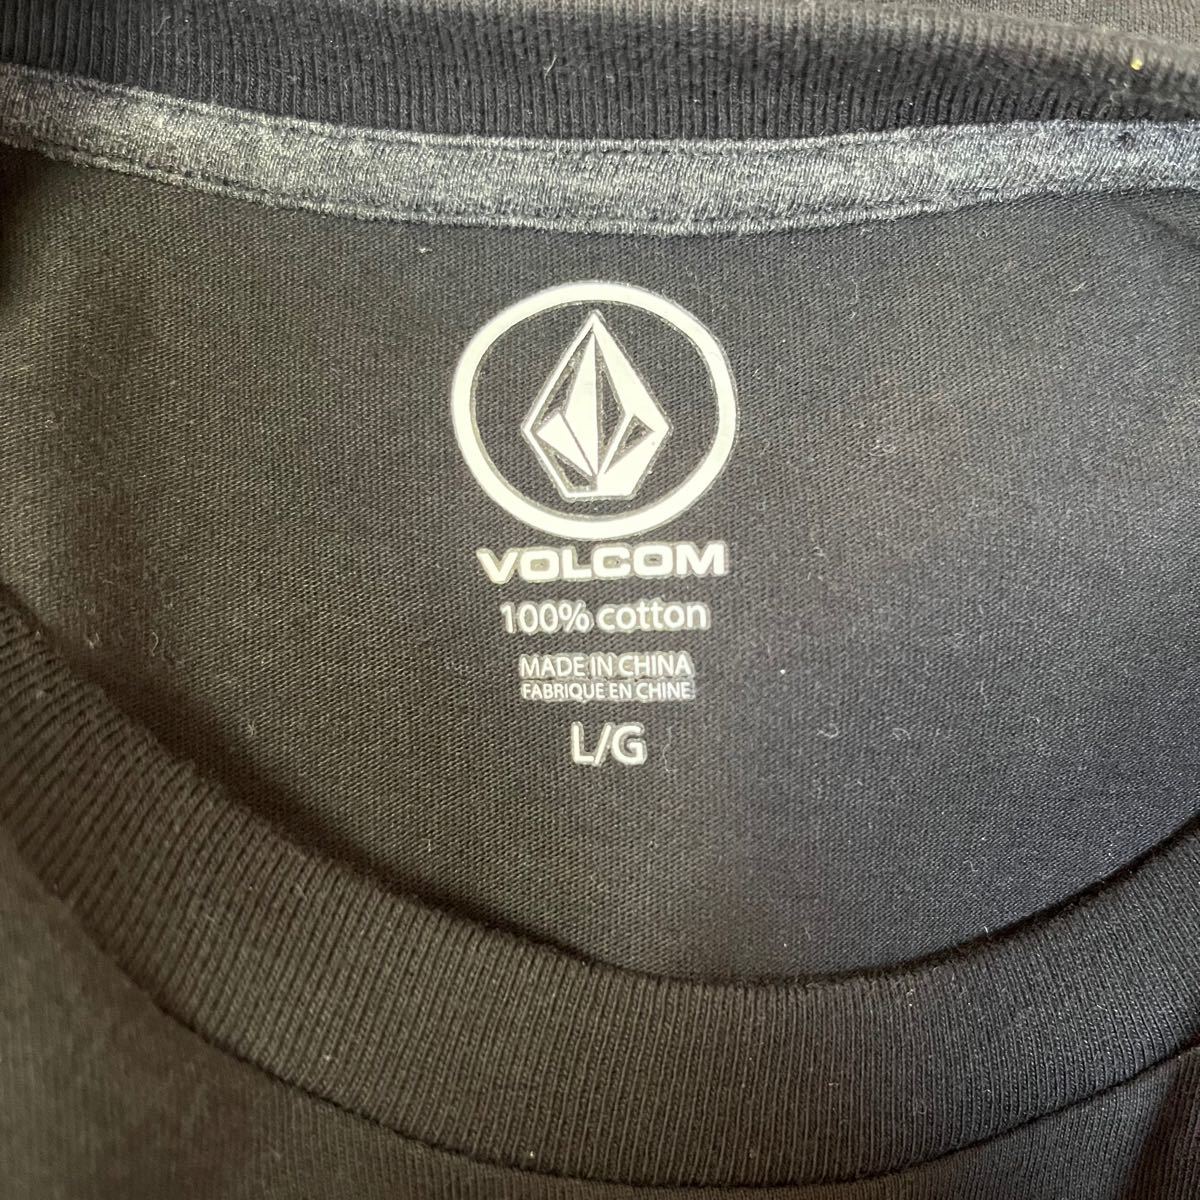 VOLCOM ボルコム Tシャツ 半袖 ロゴ ニコちゃんマーク ブラック 黒